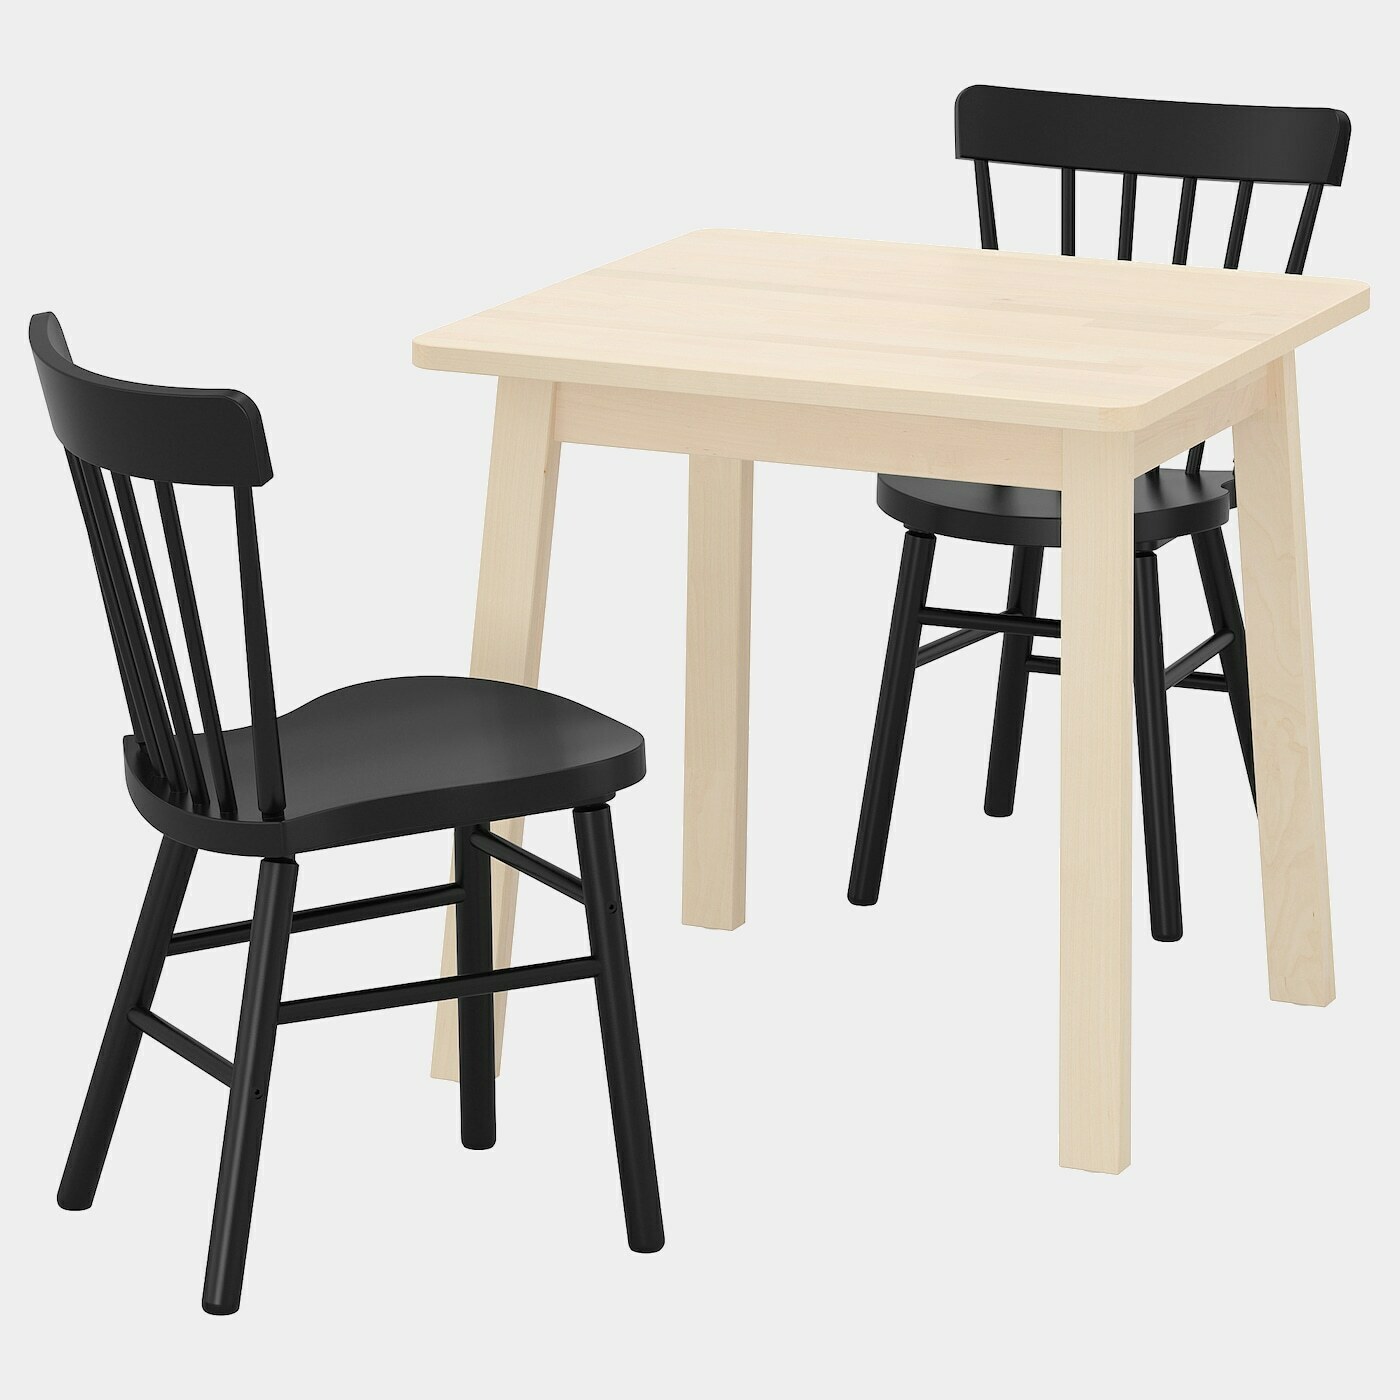 NORRÅKER / NORRARYD Tisch und 2 Stühle  - Essplatzgruppe - Möbel Ideen für dein Zuhause von Home Trends. Möbel Trends von Social Media Influencer für dein Skandi Zuhause.